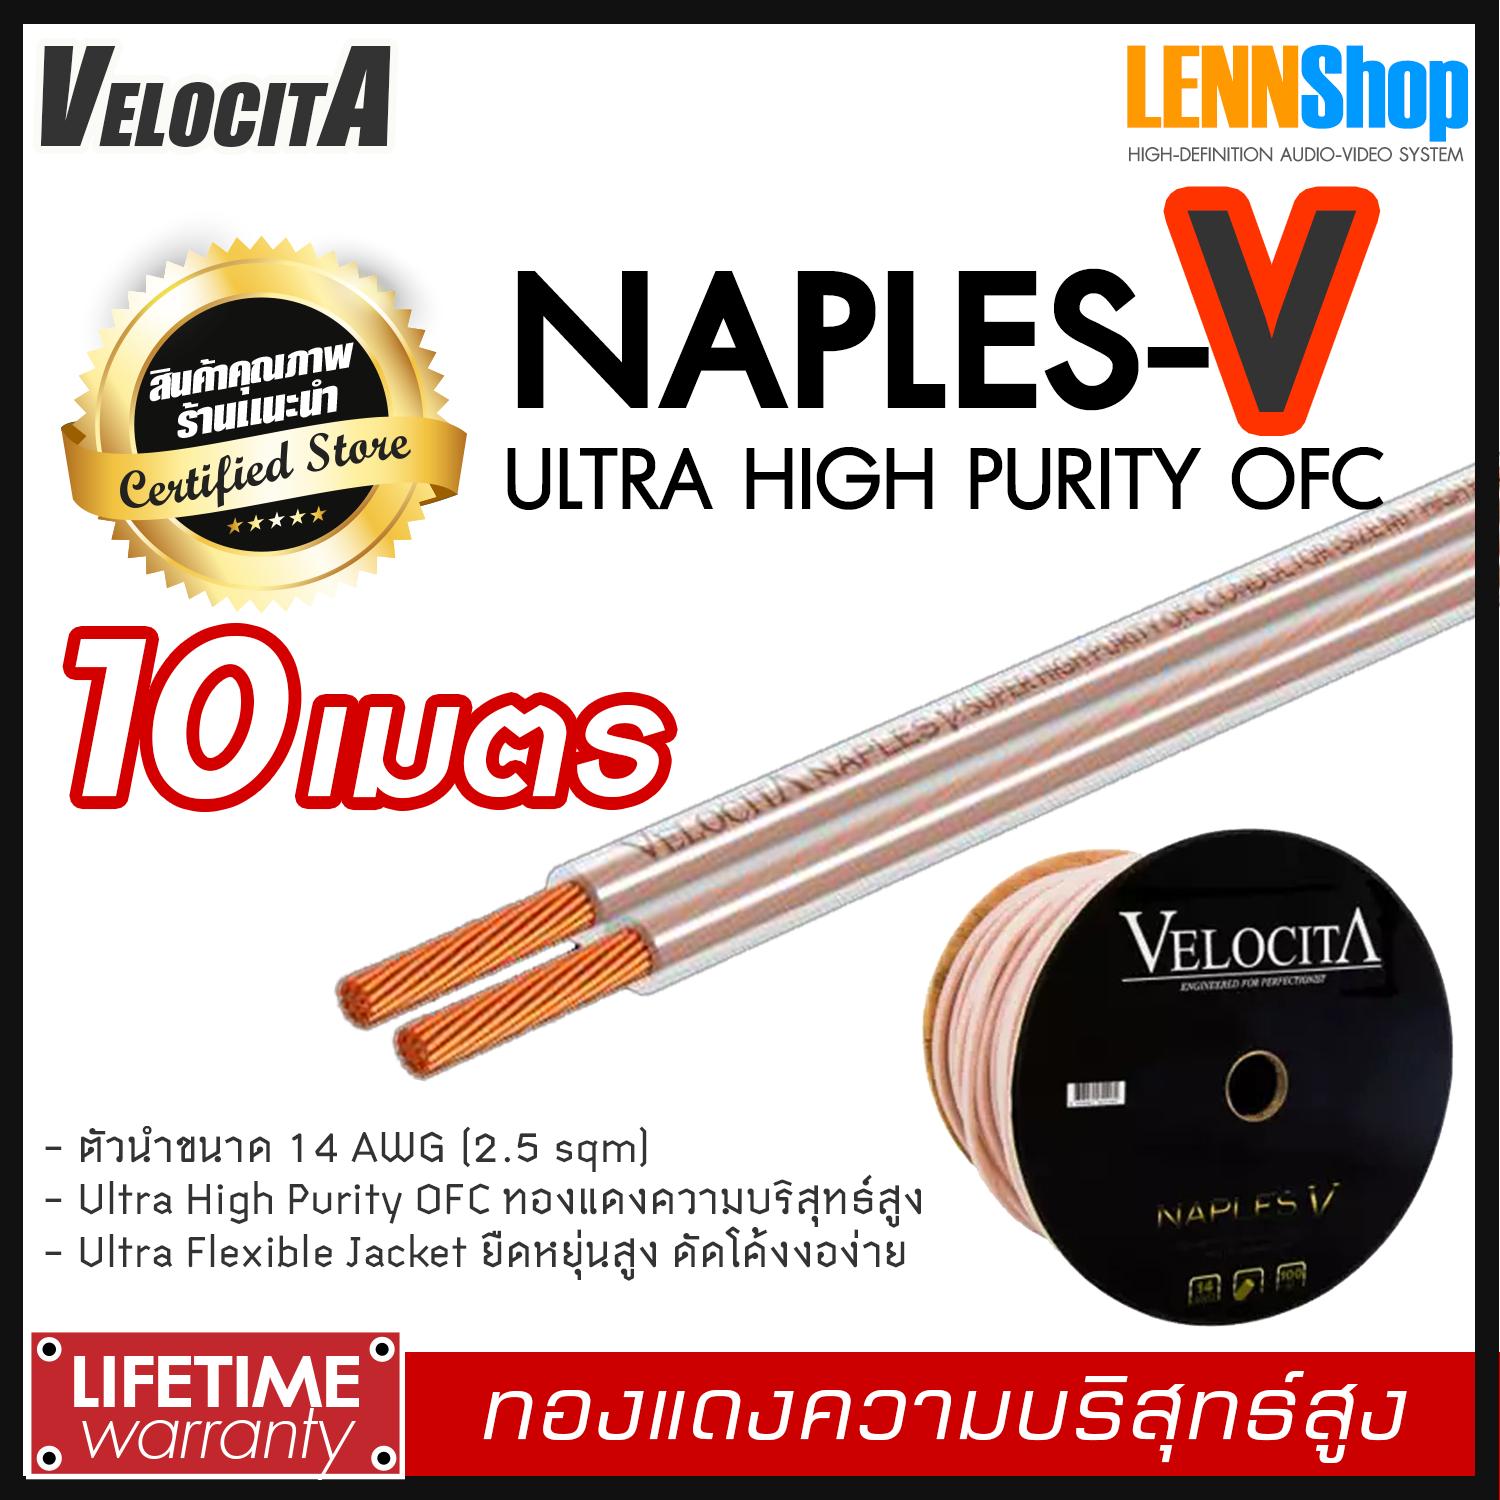 VELOCITA : NAPLES V สายลำโพง Ultra High Purity OFC ความบริสุทธ์สูง ความยาว ตั้งแต่ 1 - 100 เมตร เลือกได้หลายขนาด สินค้าของแท้ 100% จากตัวแทนจำหน่ายอย่างเป็นทางการ จำหน่ายโดย LENNSHOP / Velocita Naple V / naple V สี 10m สี 10m